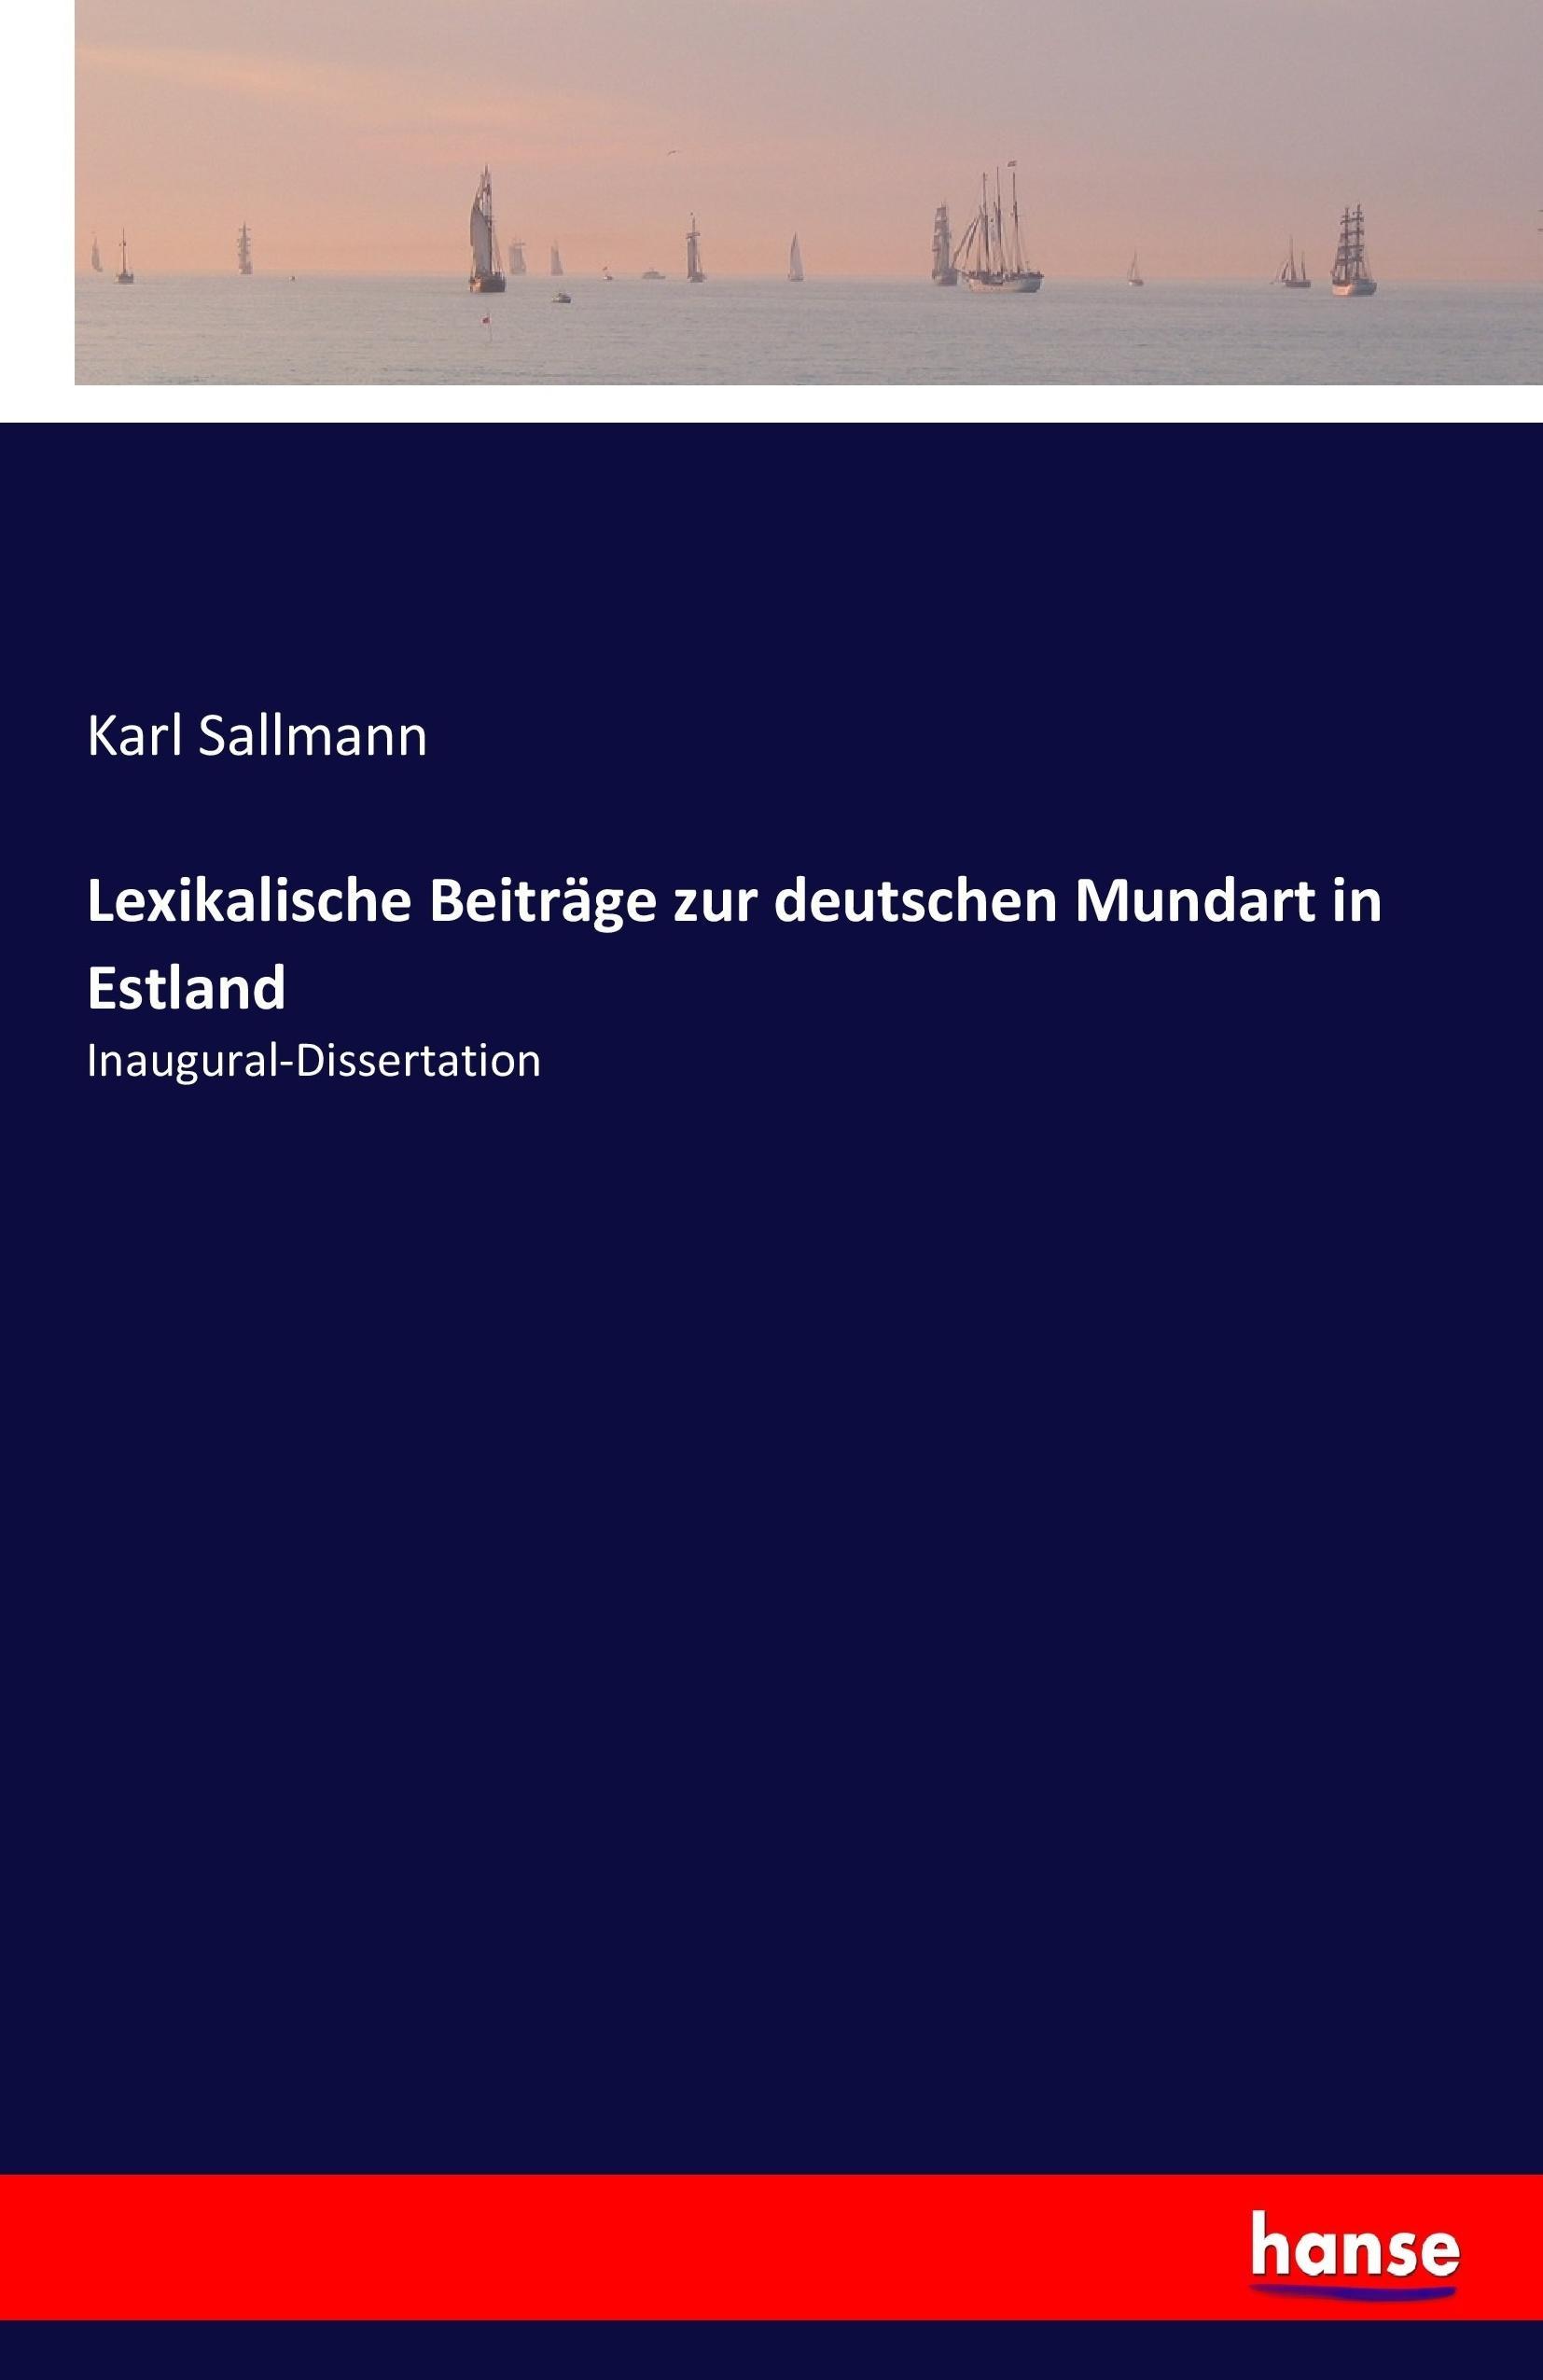 Lexikalische Beiträge zur deutschen Mundart in Estland | Inaugural-Dissertation | Karl Sallmann | Taschenbuch | Paperback | 96 S. | Deutsch | 2017 | hansebooks | EAN 9783744636773 - Sallmann, Karl